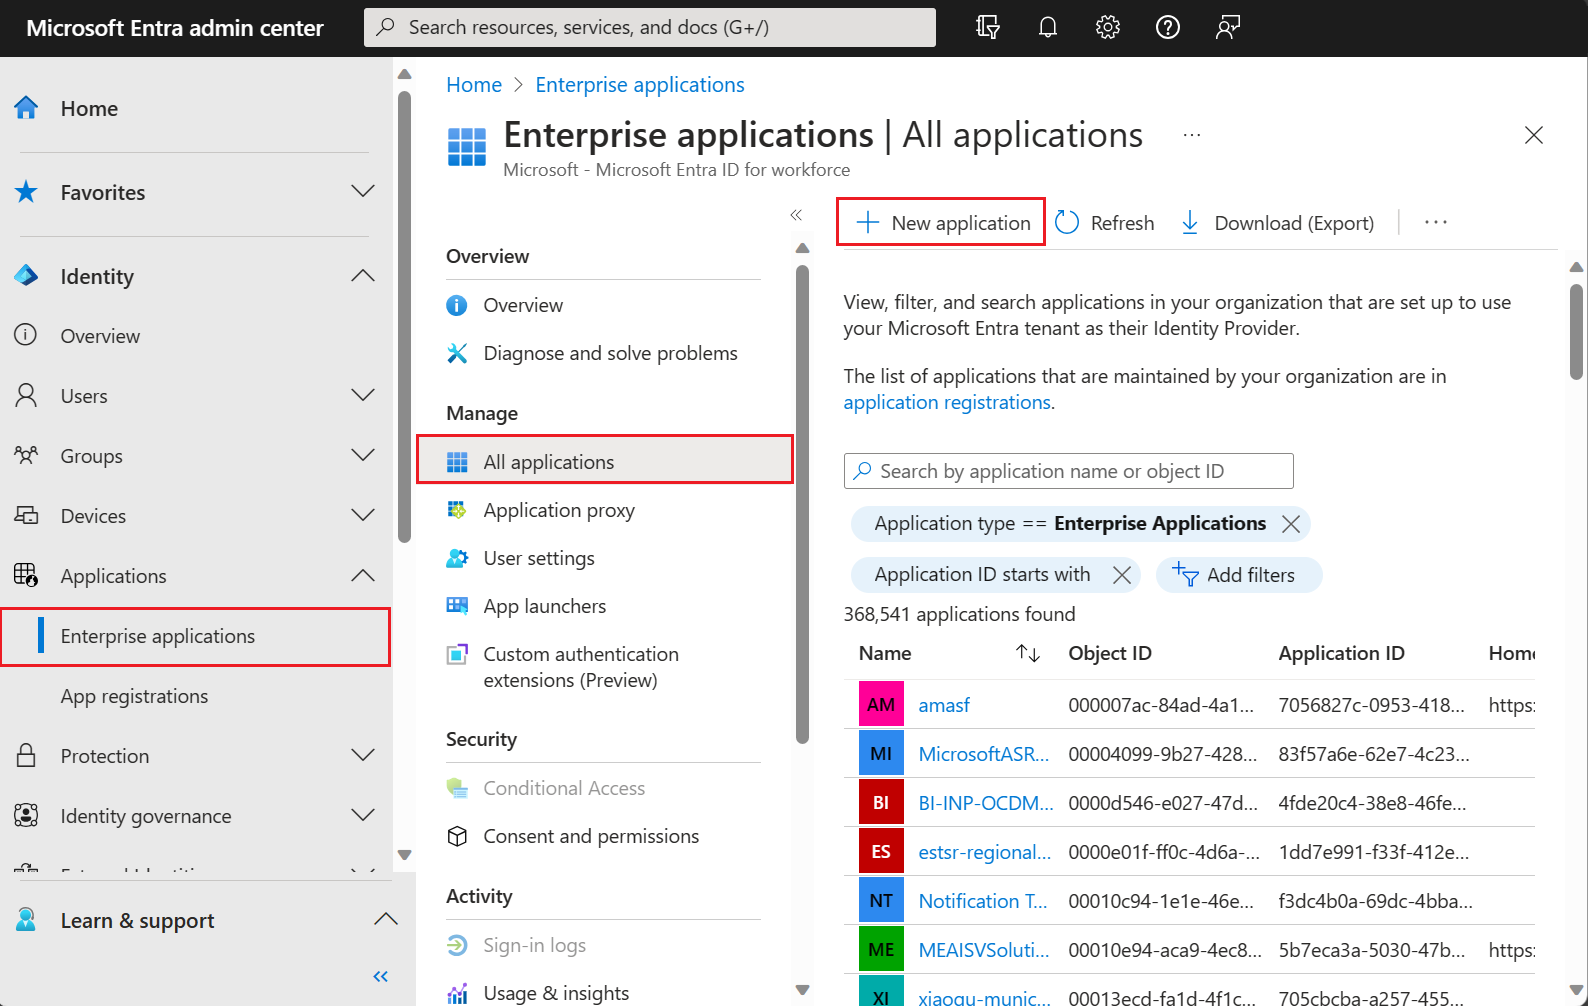 Captura de tela mostrando no painel da galeria de aplicativos do Microsoft Entra no [Centro de administração do Microsoft Entra](https://entra.microsoft.com).